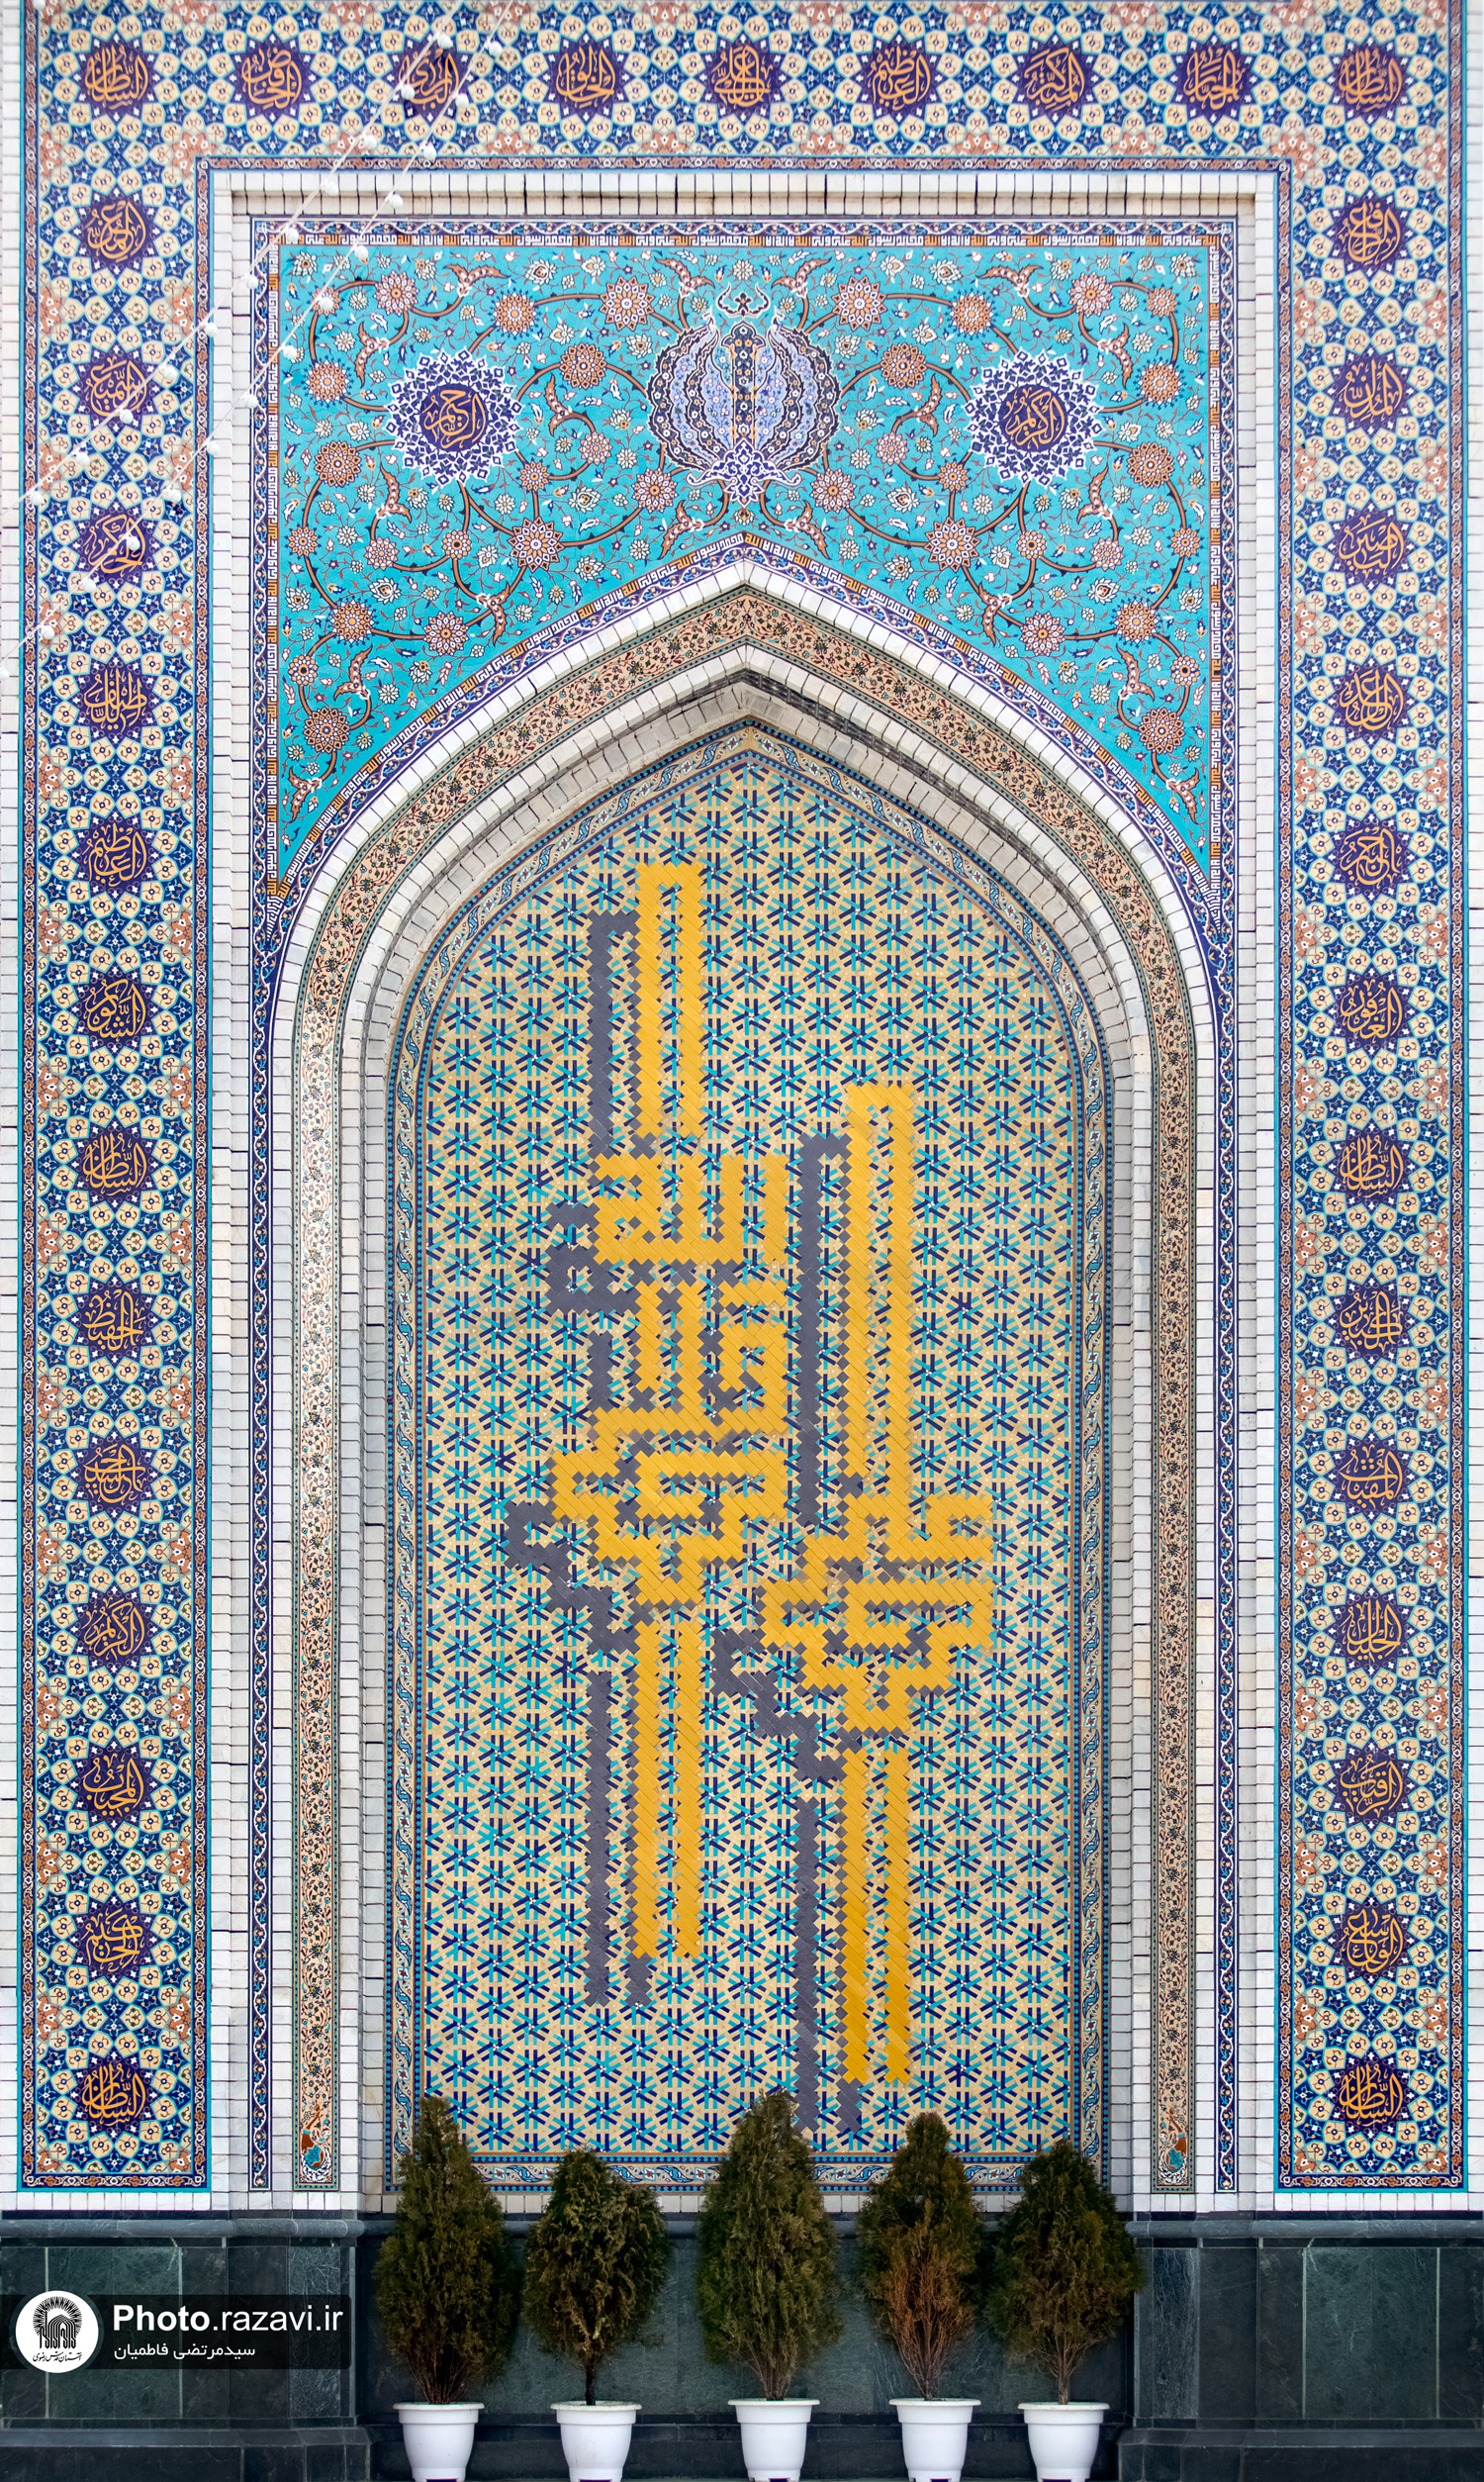 عکس با کیفیت : نقش علی ولی الله بر کاشی کاری های جنب ورودی باب الکاظم علیه السلام حرم مطهر رضوی